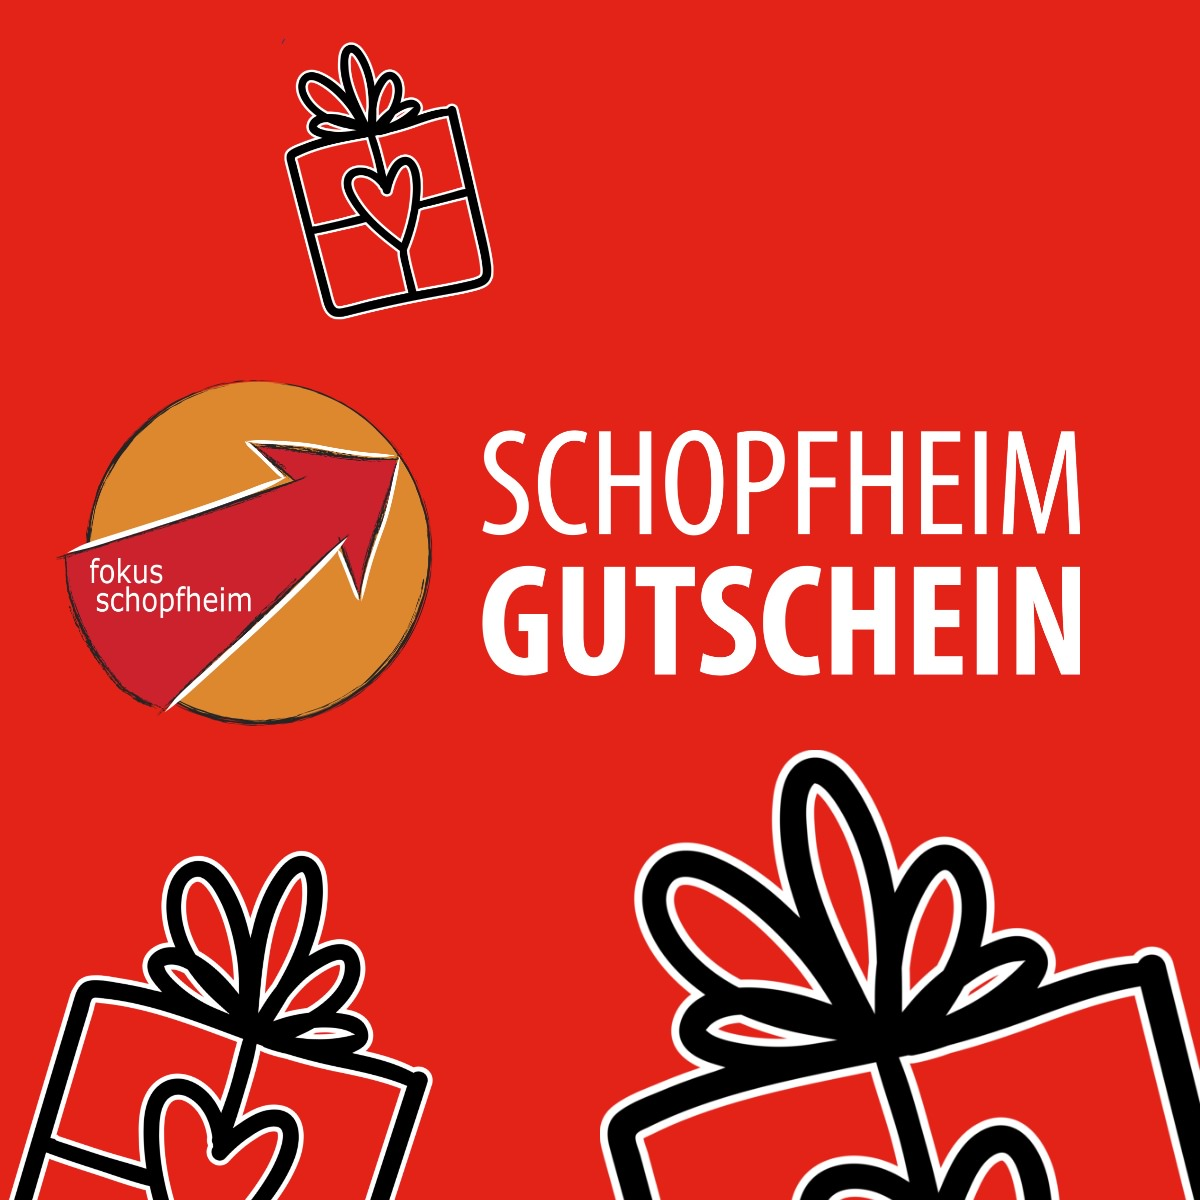 (c) Schopfheim-gutschein.de